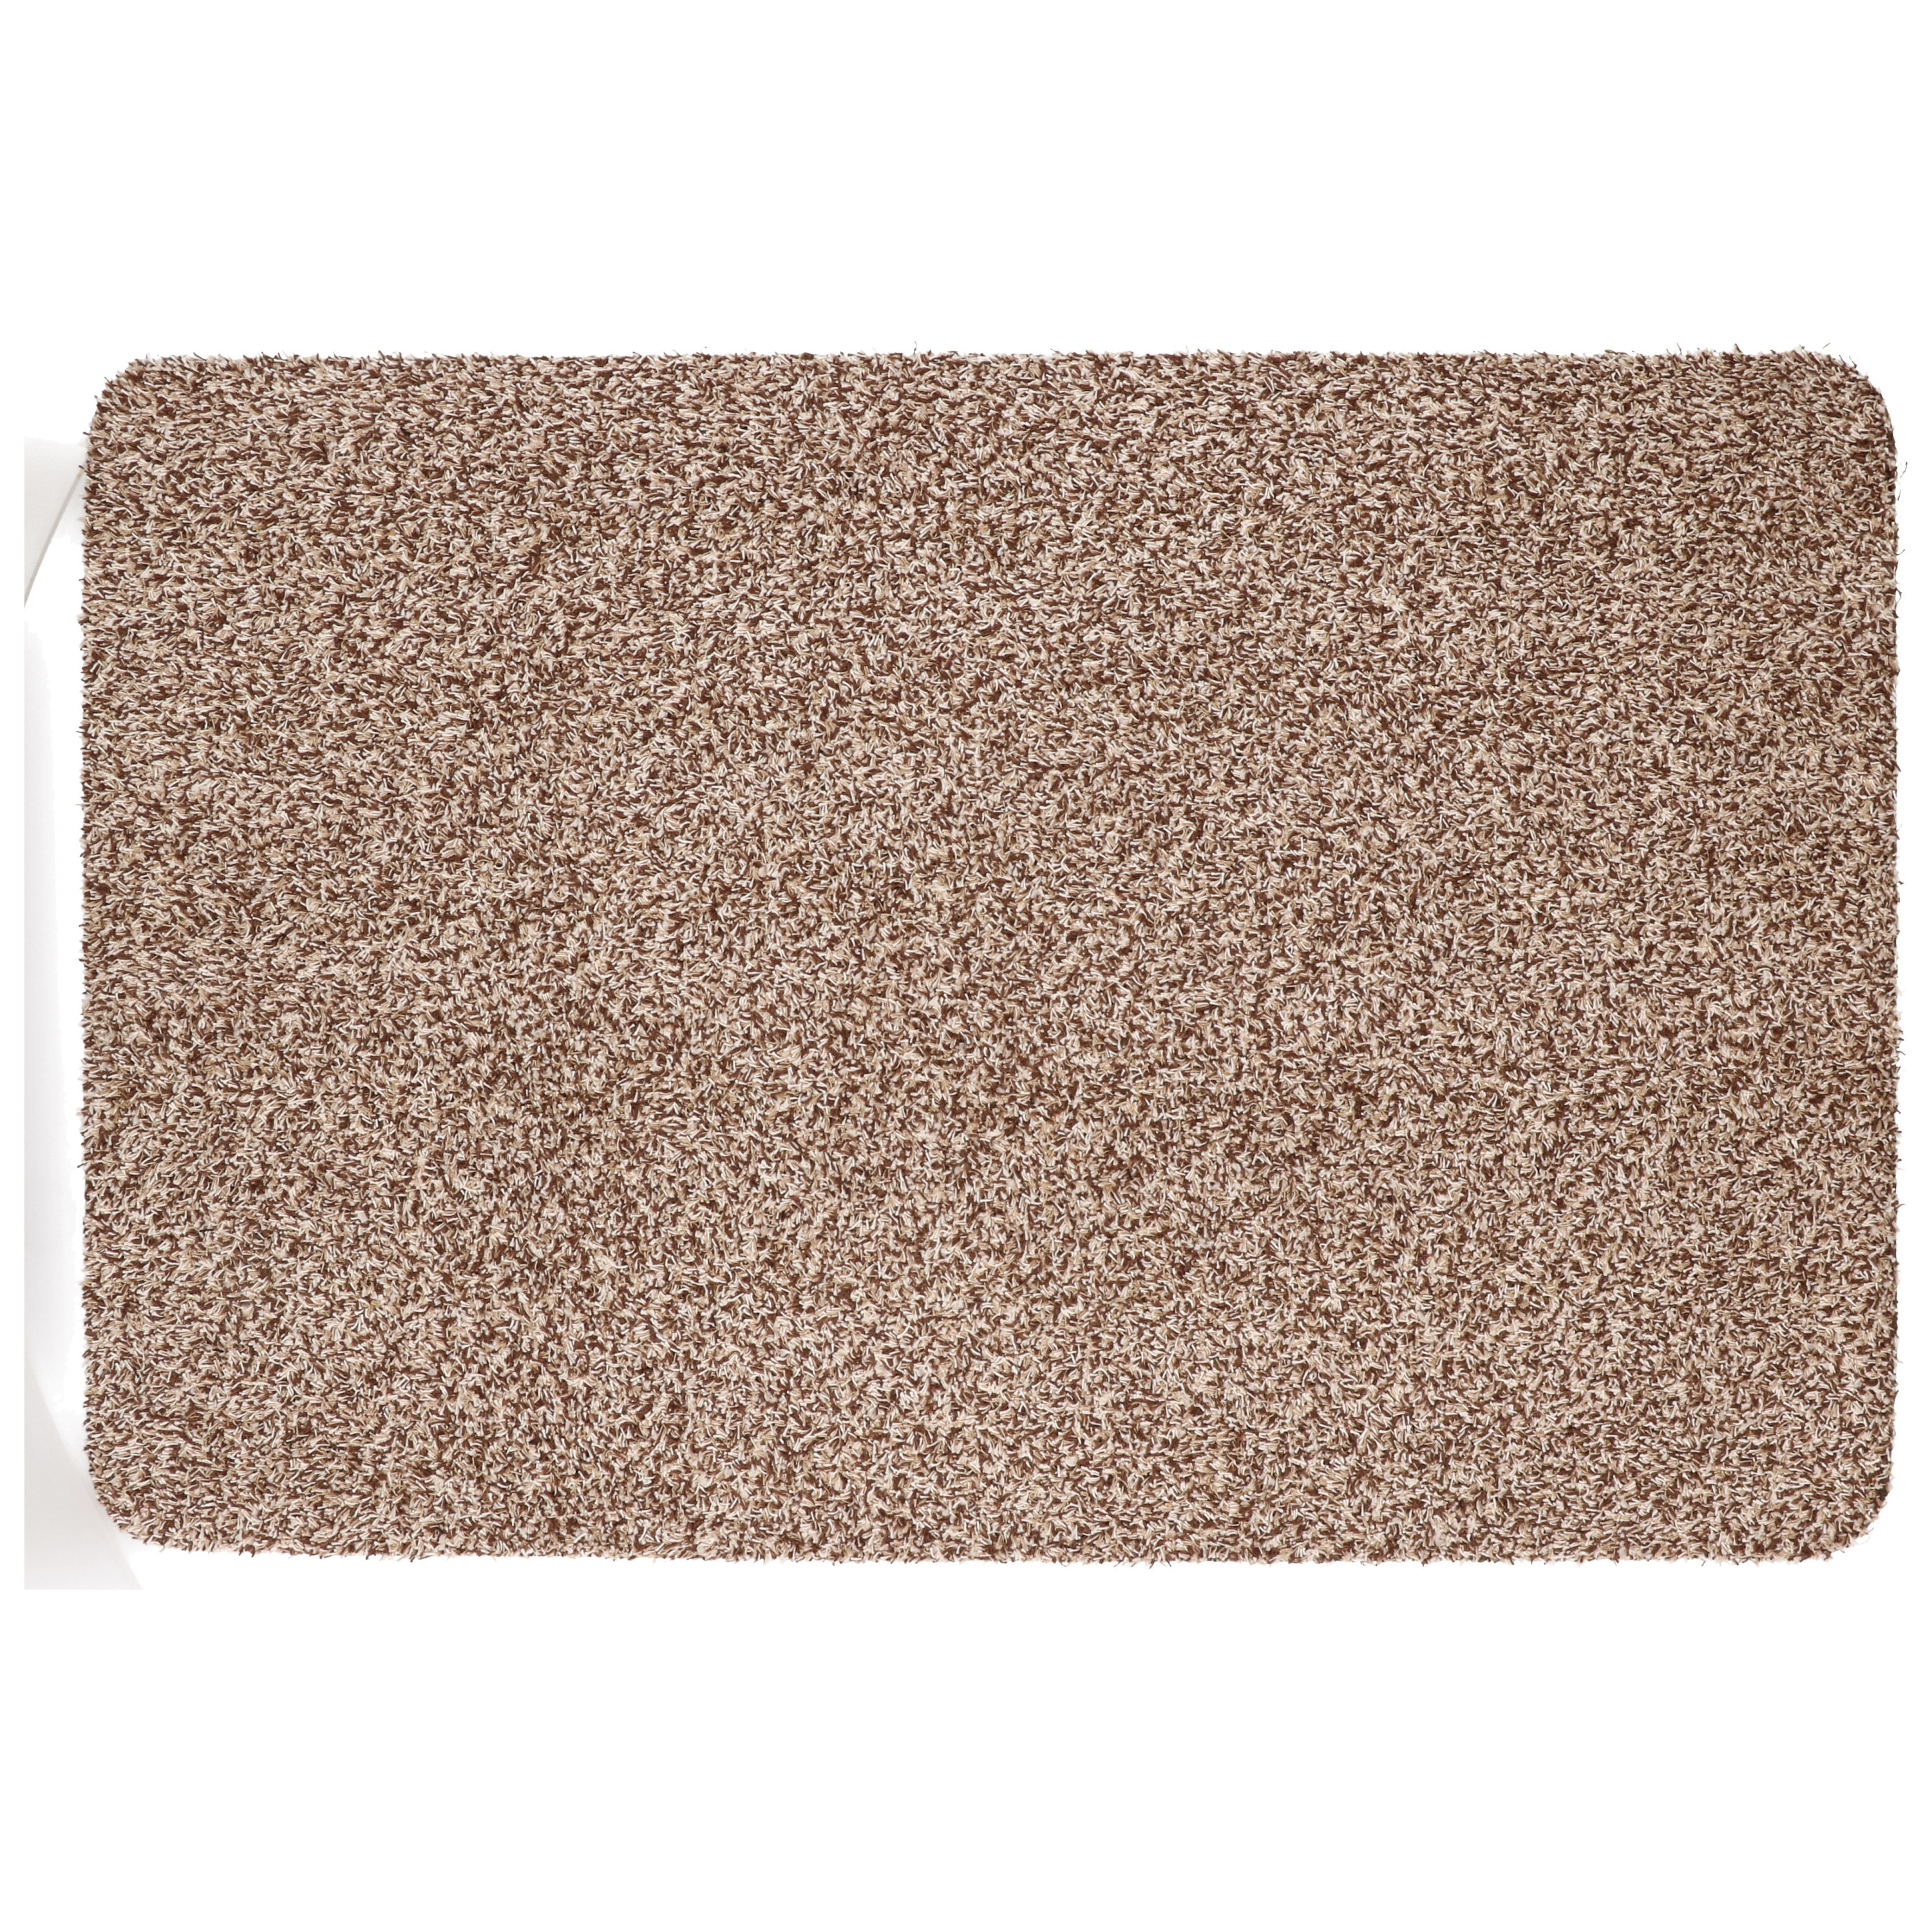 Anti slip deurmat/schoonloopmat pvc beige extra absorberend 60 x 40 cm voor binnen